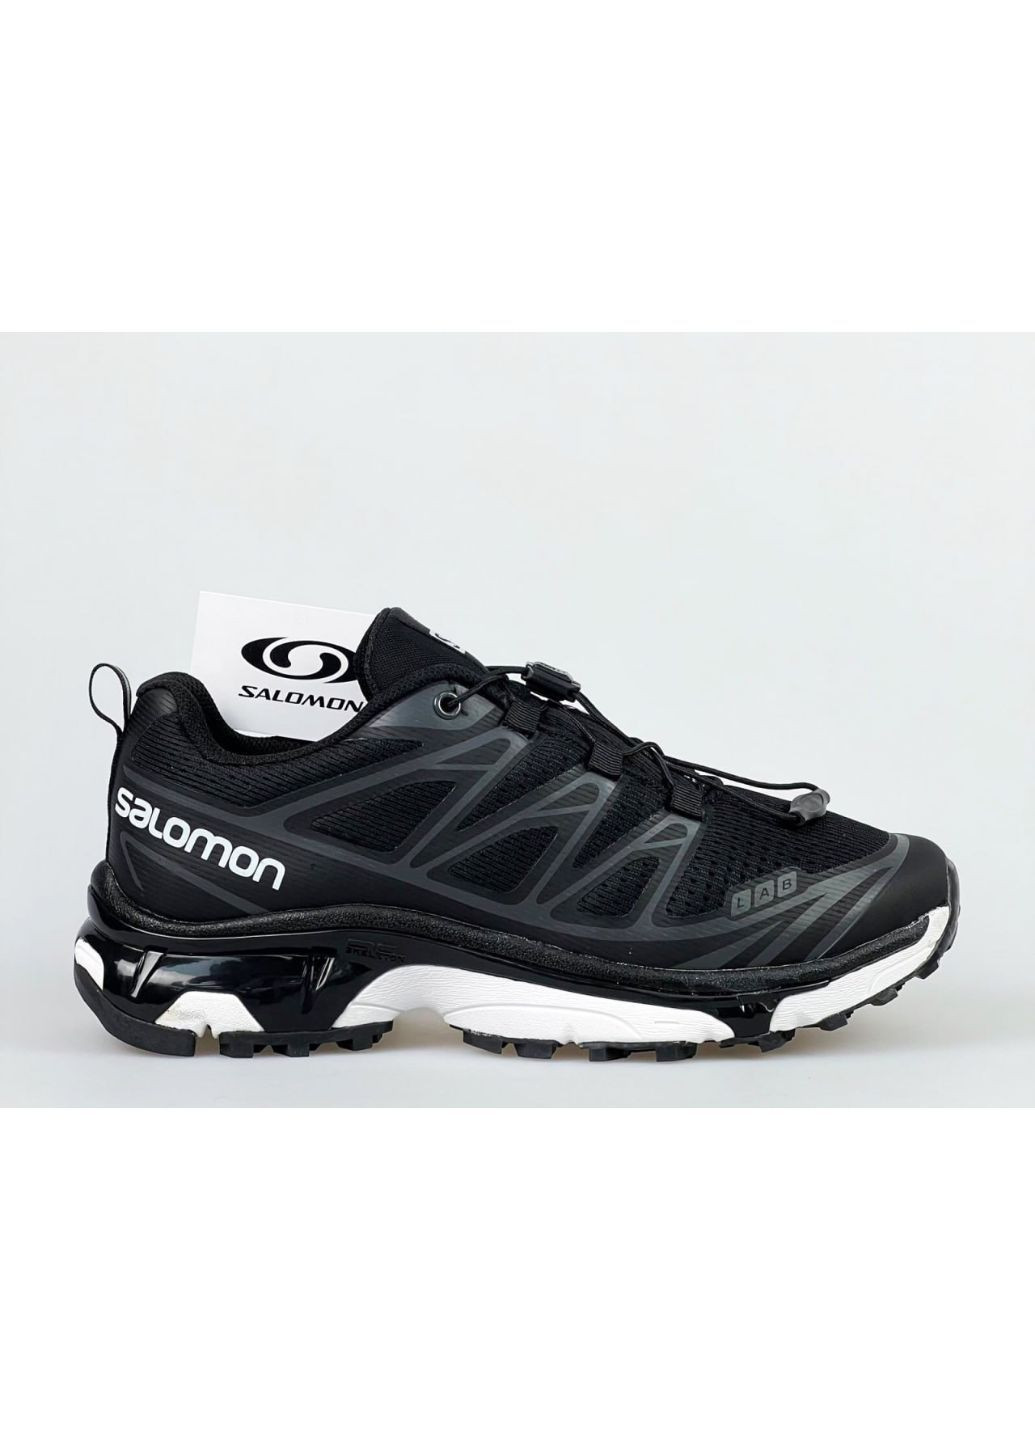 Чорно-білі Осінні чоловічі кросівки чорні з білим «no name» Salomon xt6